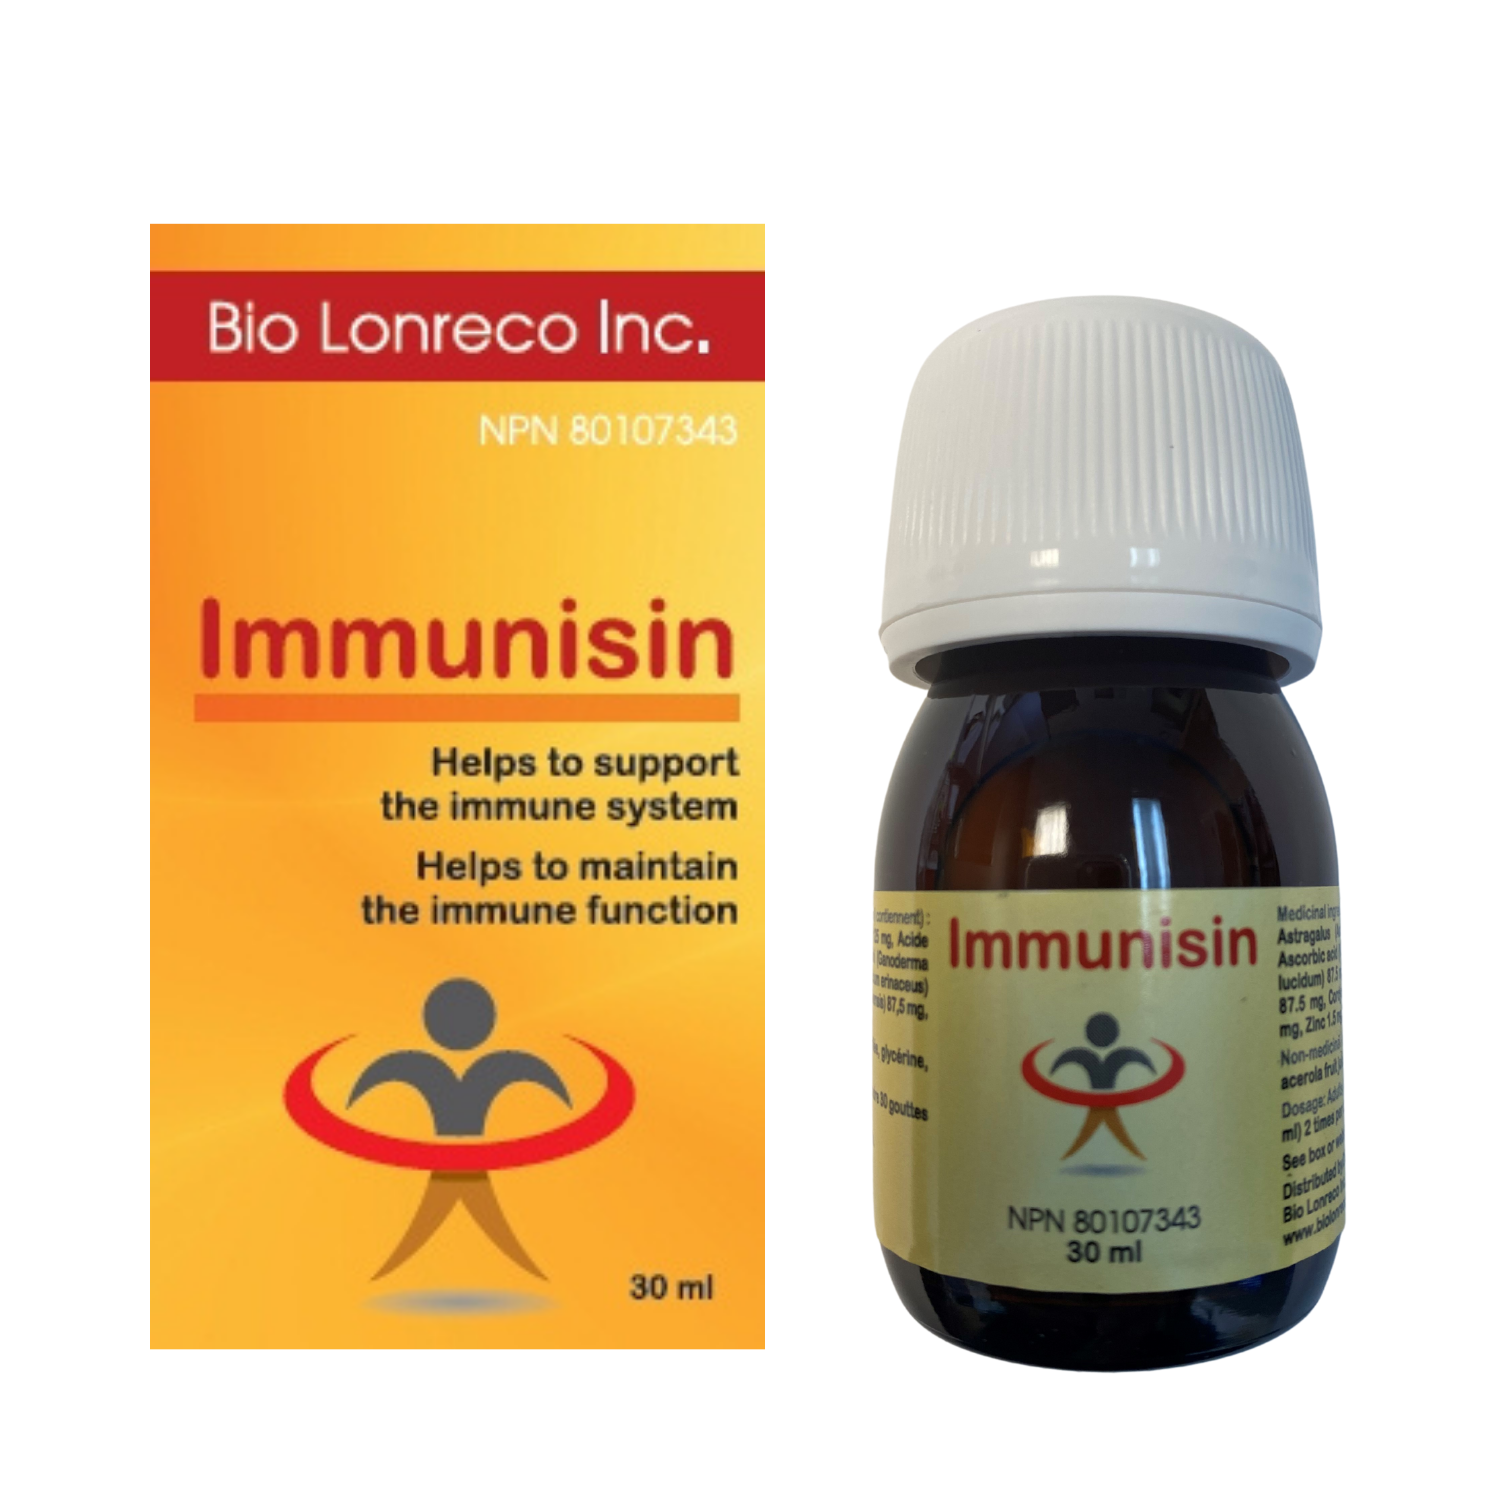 Immunisin 30 ml, Bio Lonreco